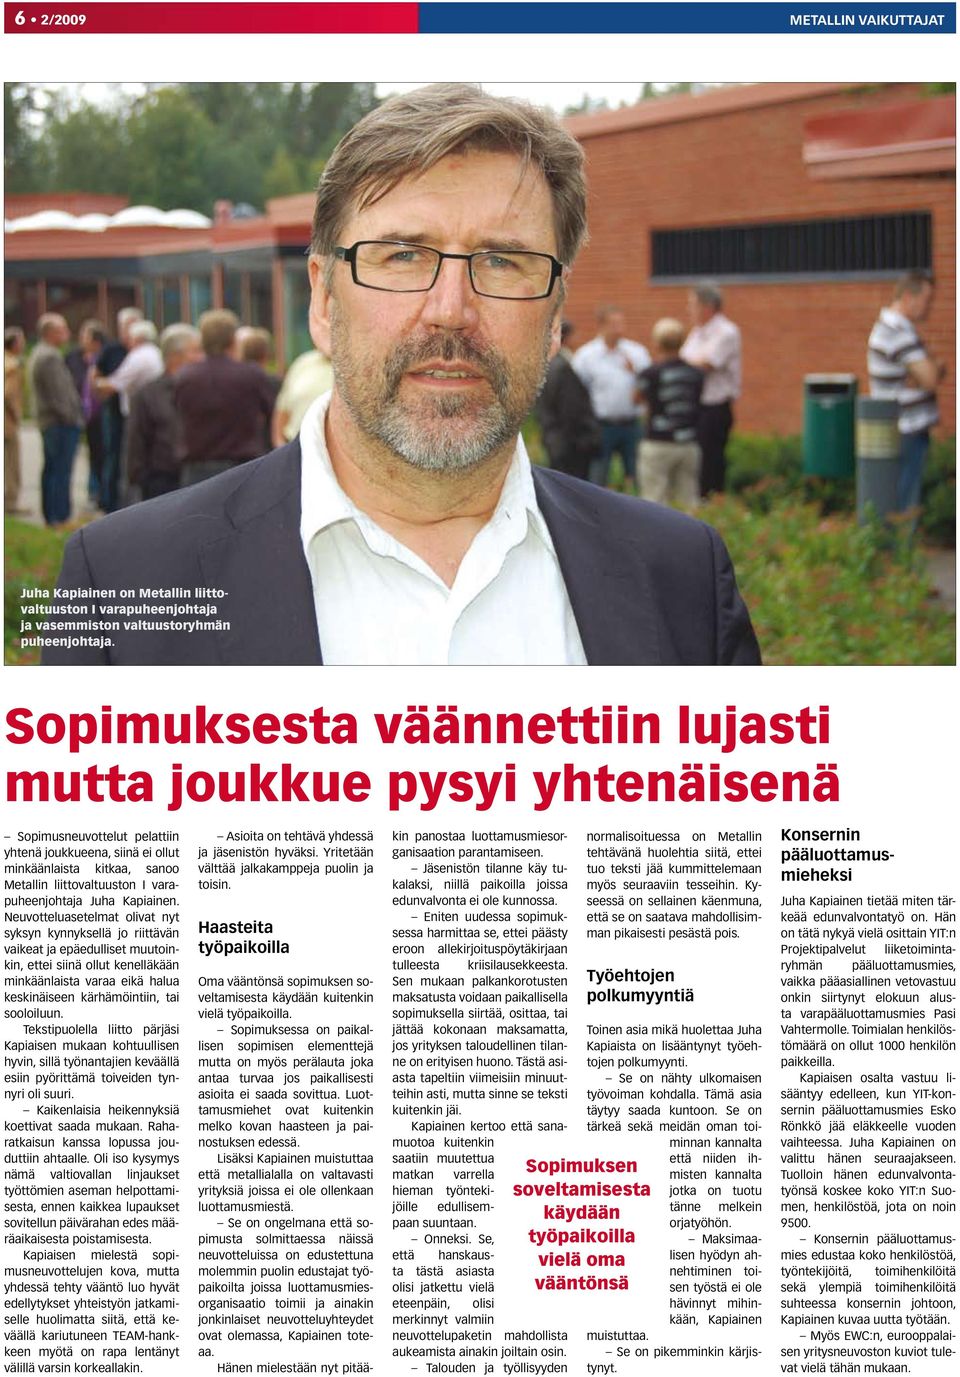 varapuheenjohtaja Juha Kapiainen.